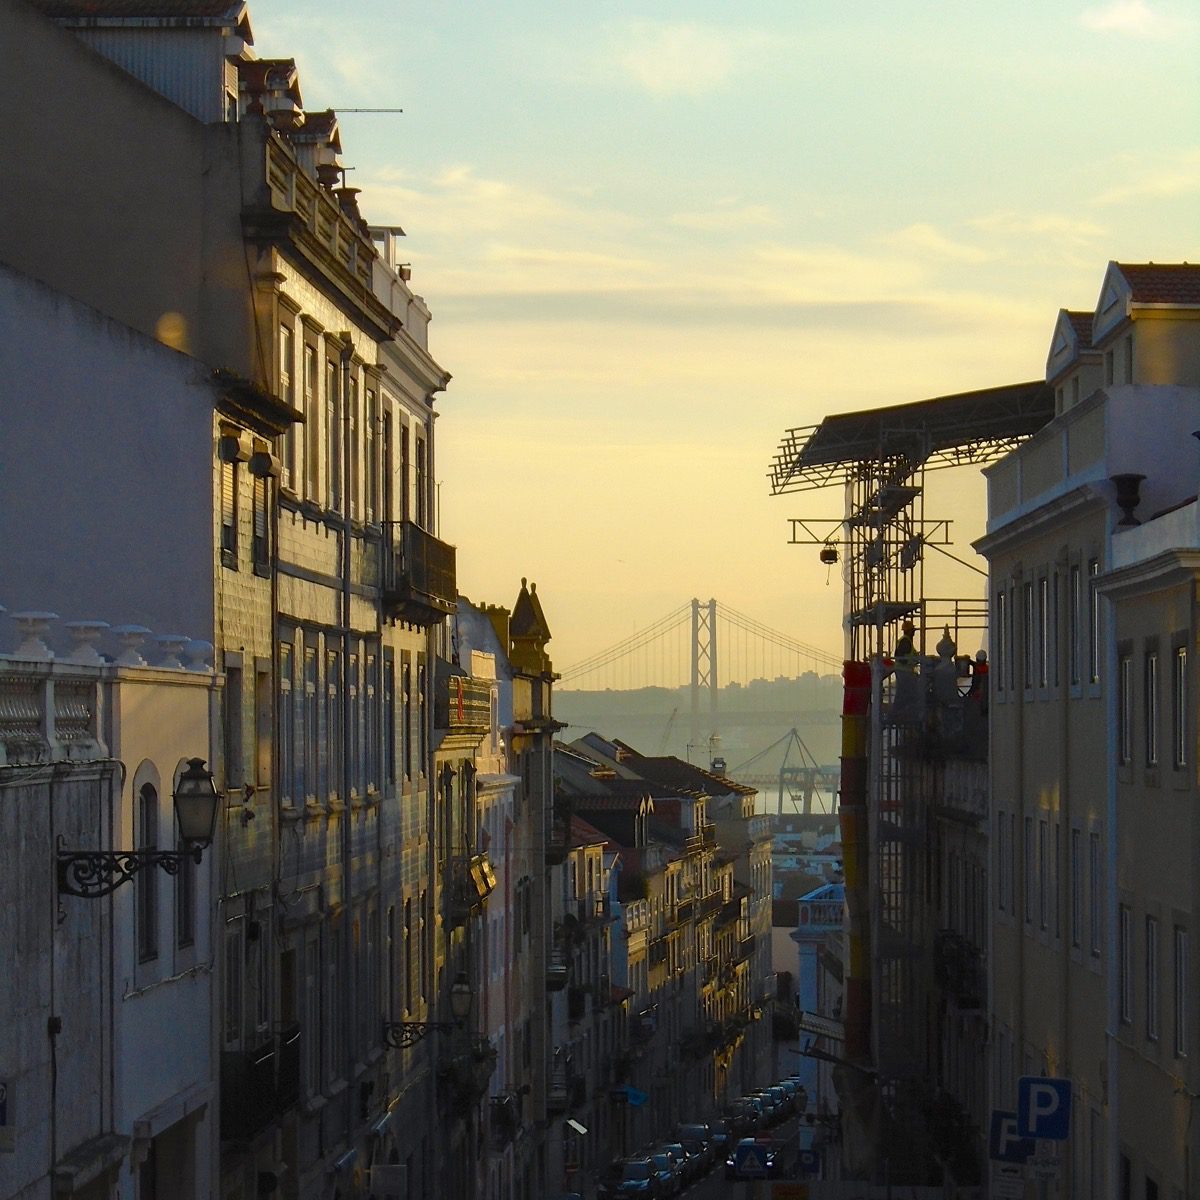 Neugier bestraft sich selbst: Viele der Fakten zu kennen macht nicht unbedingt glücklich(er) (Foto: Lissabons Príncipe Real in der Abendsonne).